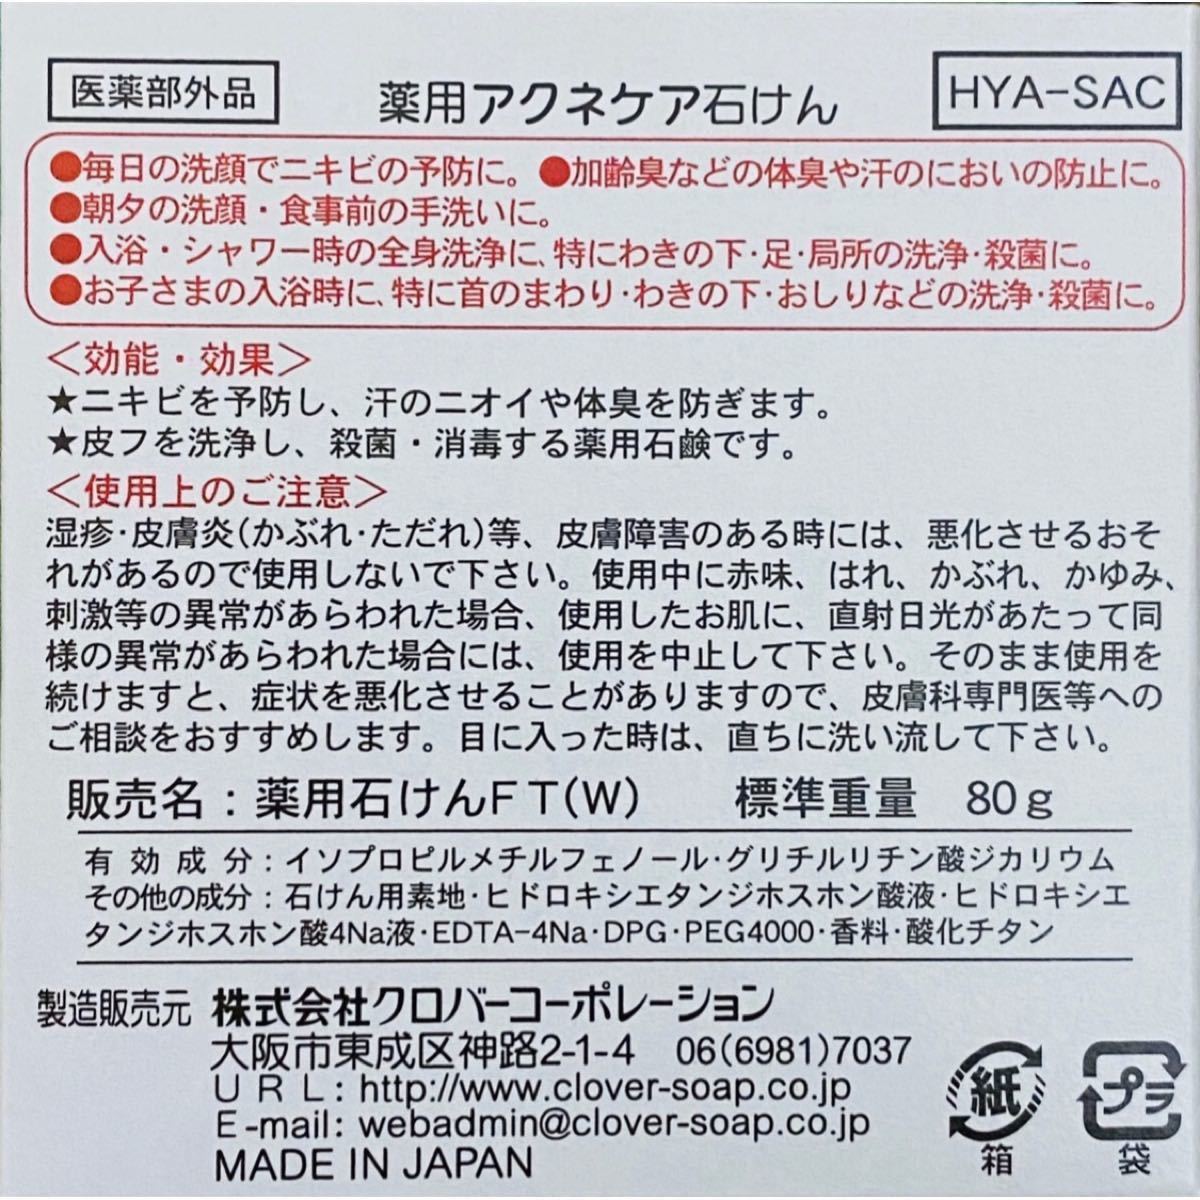 薬用 アクネケア 石けん 80g×1個【殺菌&消毒 ニオイ防止】